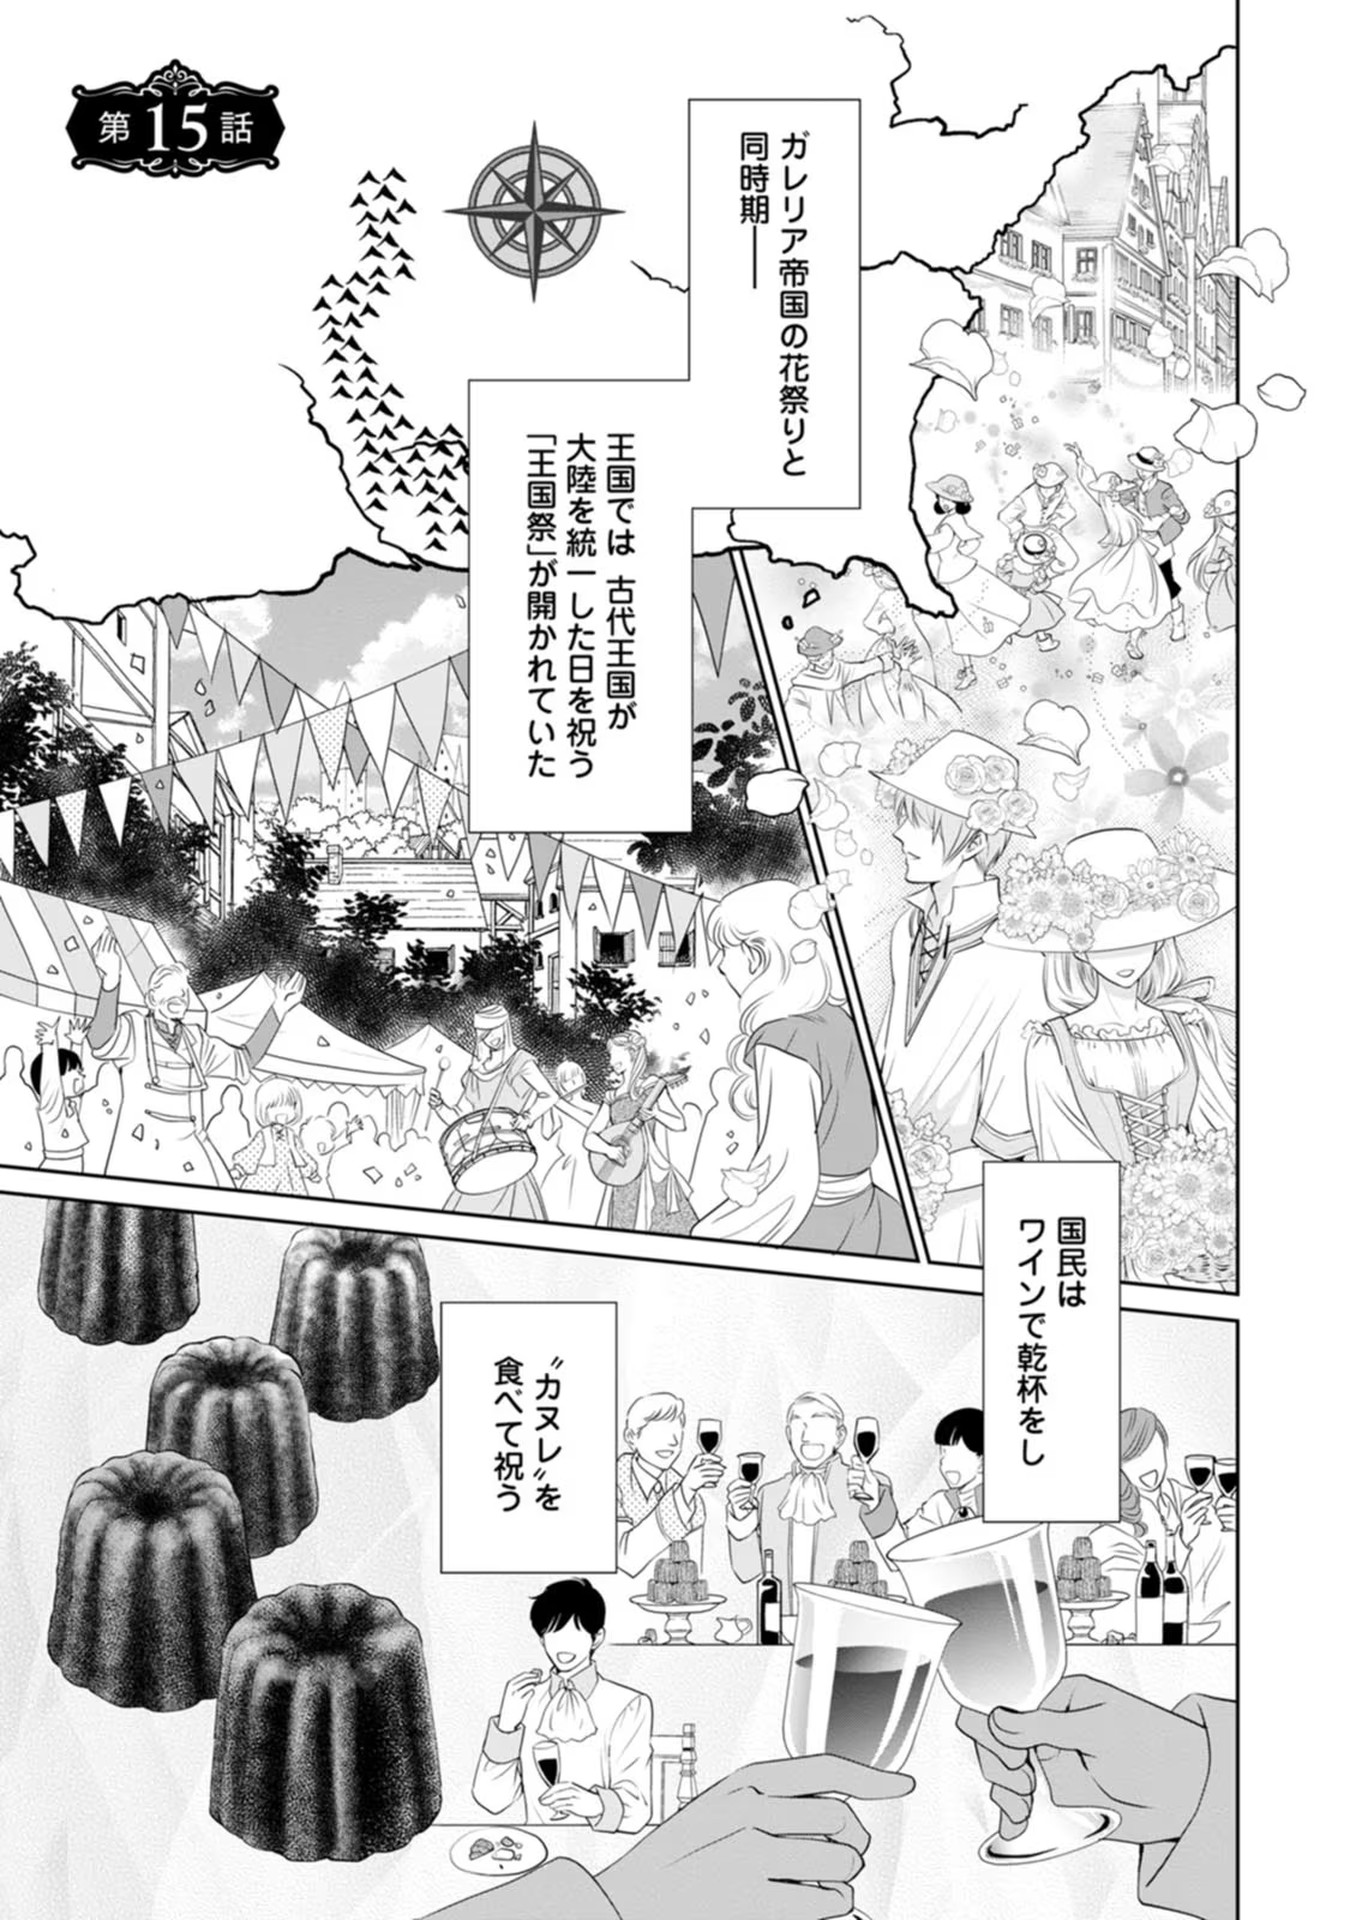 Shinjitsu no Ai wo Mitsuketa to Iwarete Konyaku Haki Saretanode, Fukuen wo Semararete mo Imasara mo Osoi desu! - Chapter 15 - Page 1